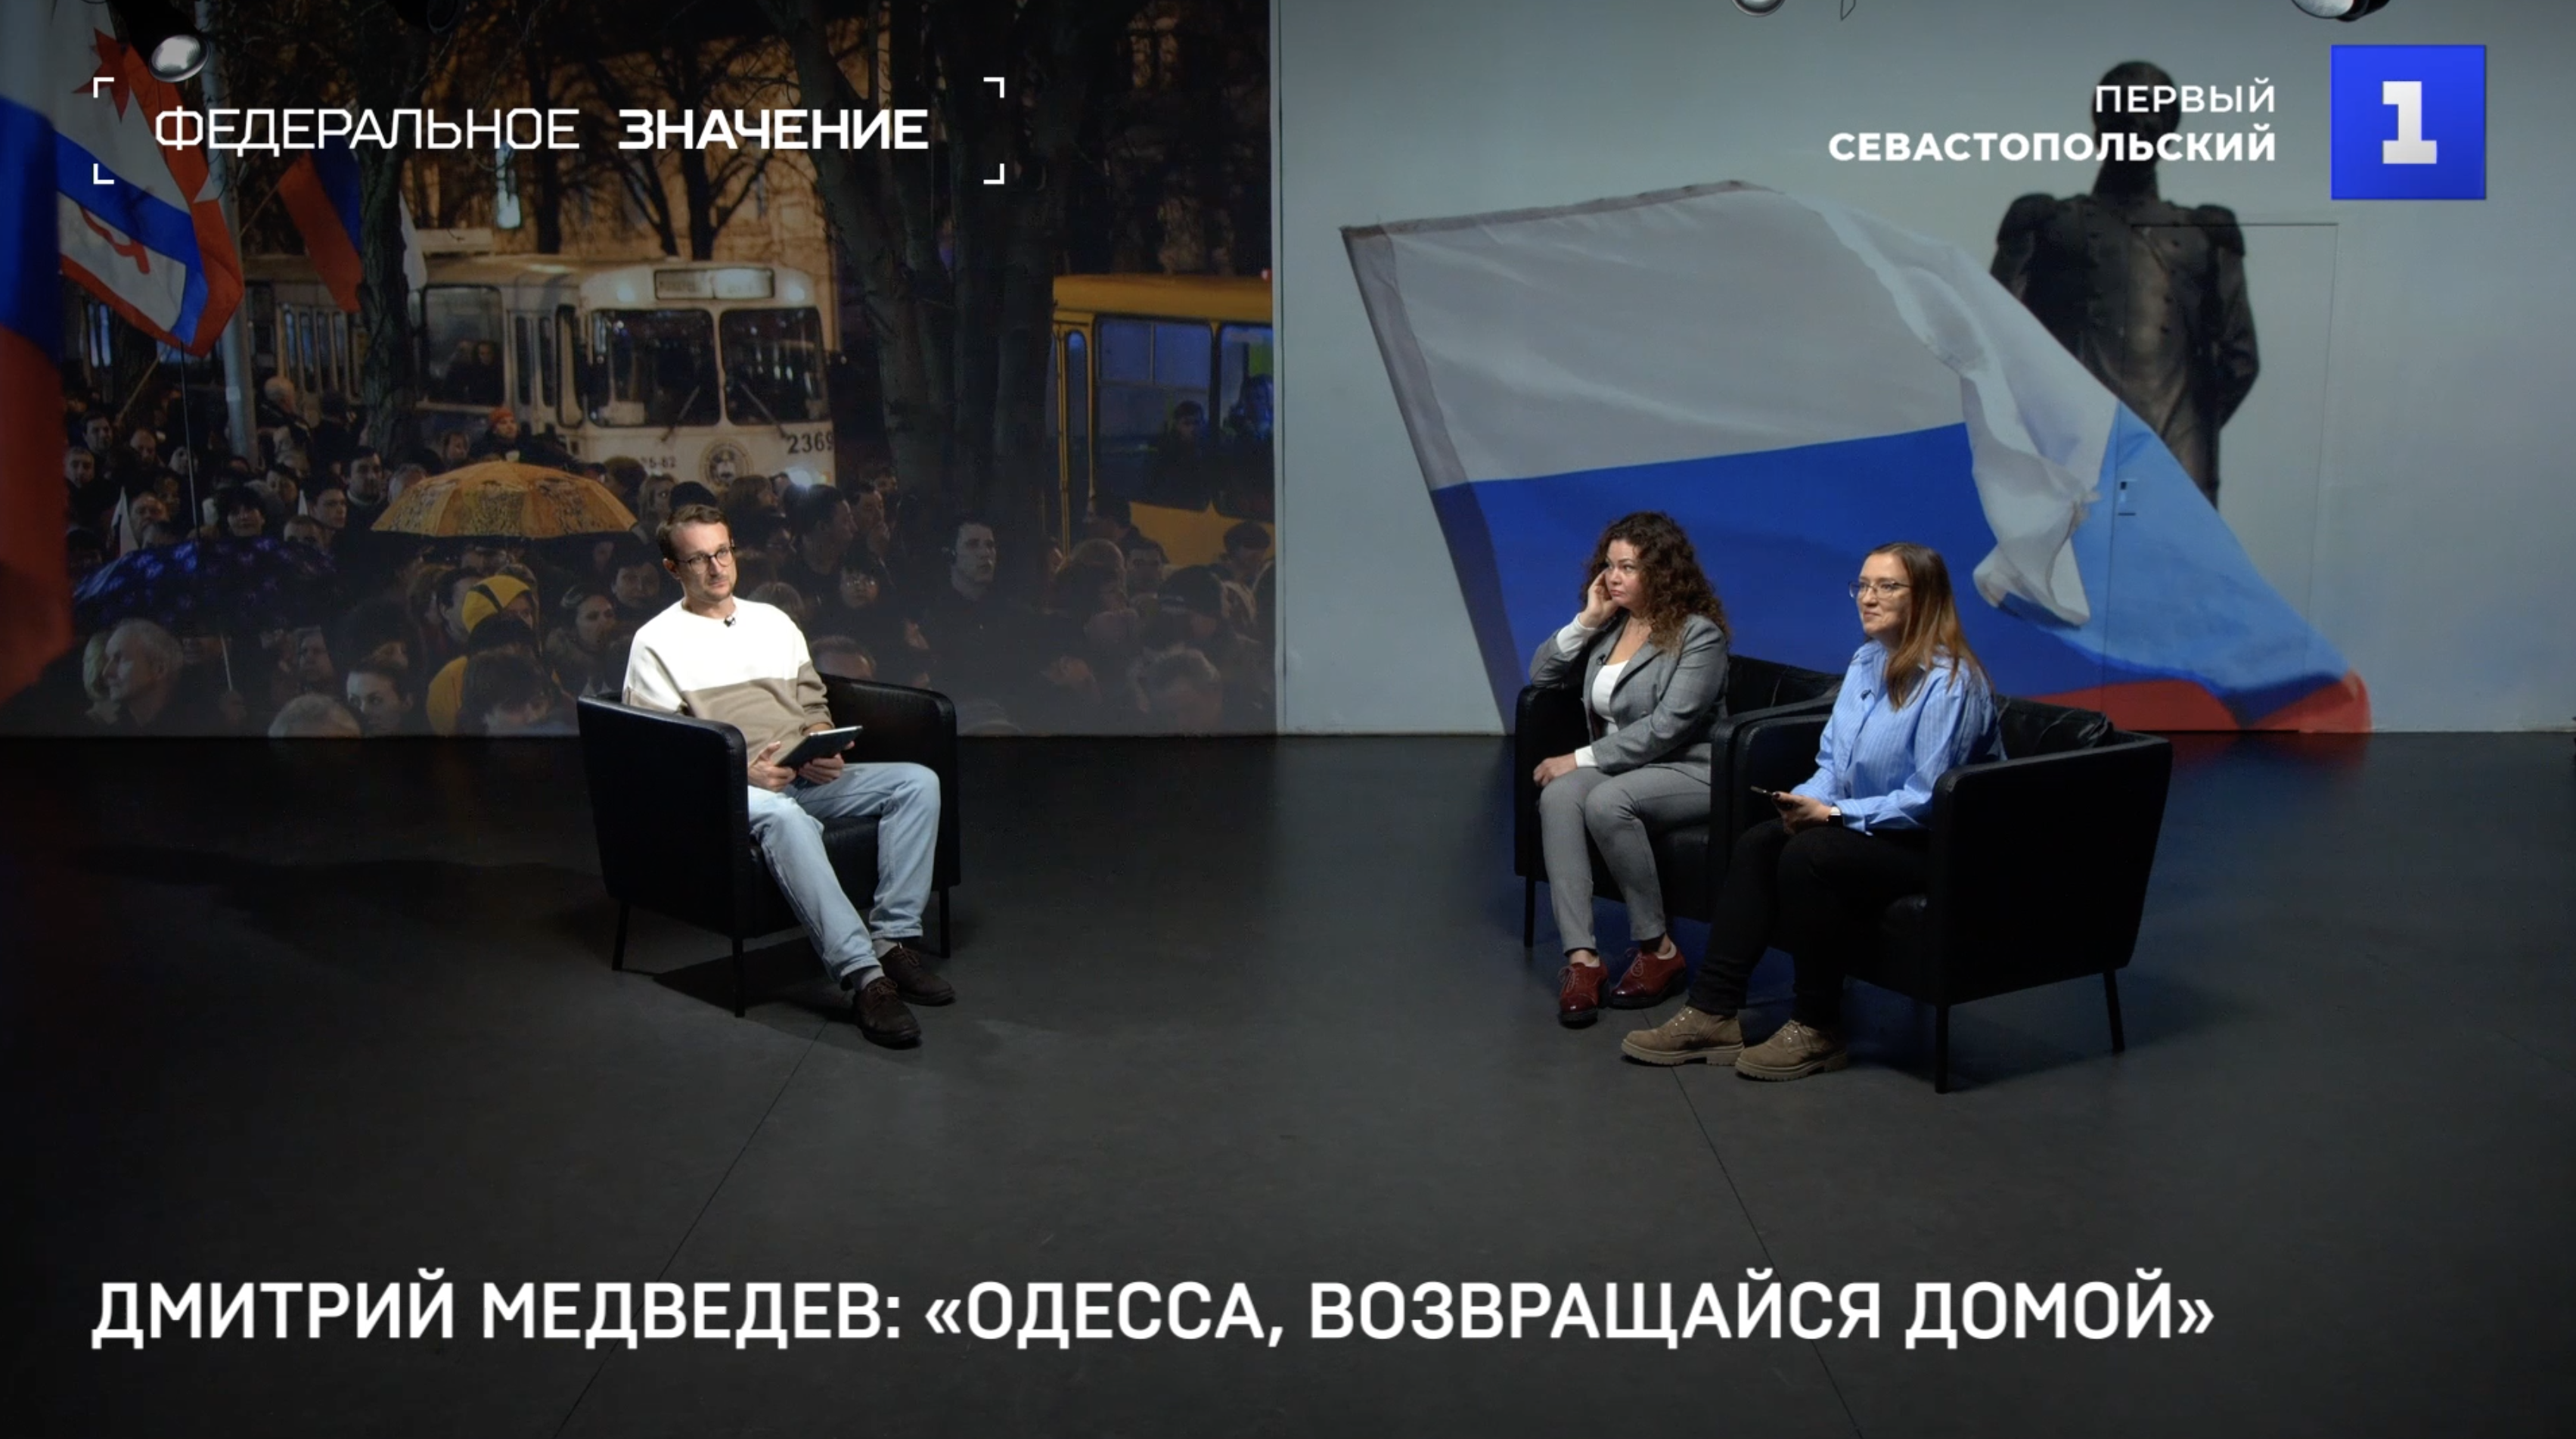 Севастополь: главные события недели в СМИ